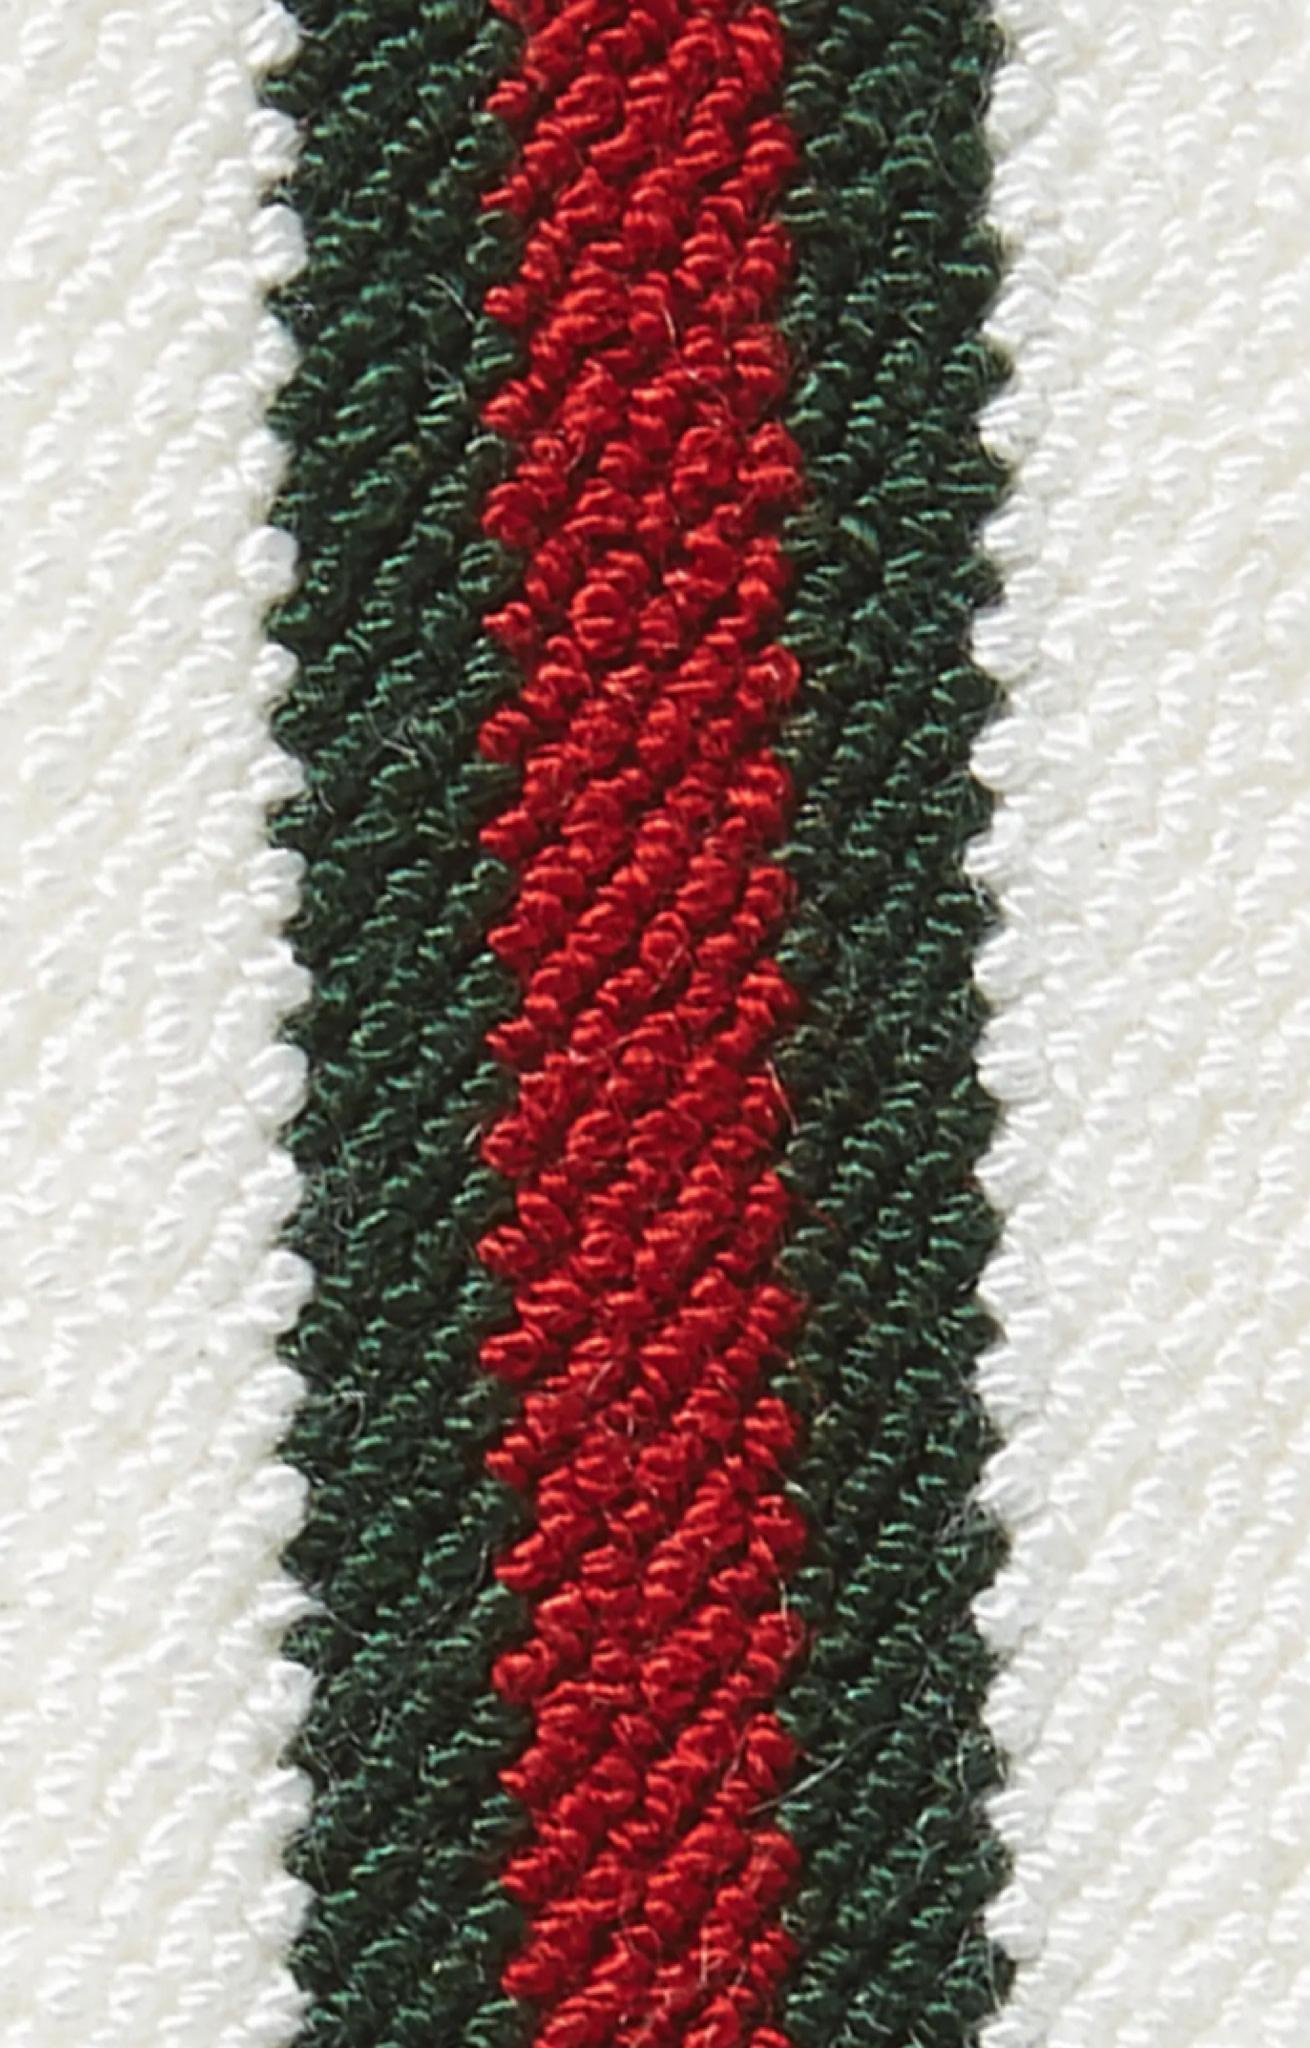 Ce bandeau élastique blanc présente une bande Gucci à effet vintage en rouge et vert.

COULEUR : Blanc/Vert/Rouge
ITEM CODE : 746045 
MATERIAL : Sythentic (Viscose/élasthanne)
MESURES :  24 x 4 cm
S'accompagne de : Tags
CONDITION : Neuf.

Fabriqué